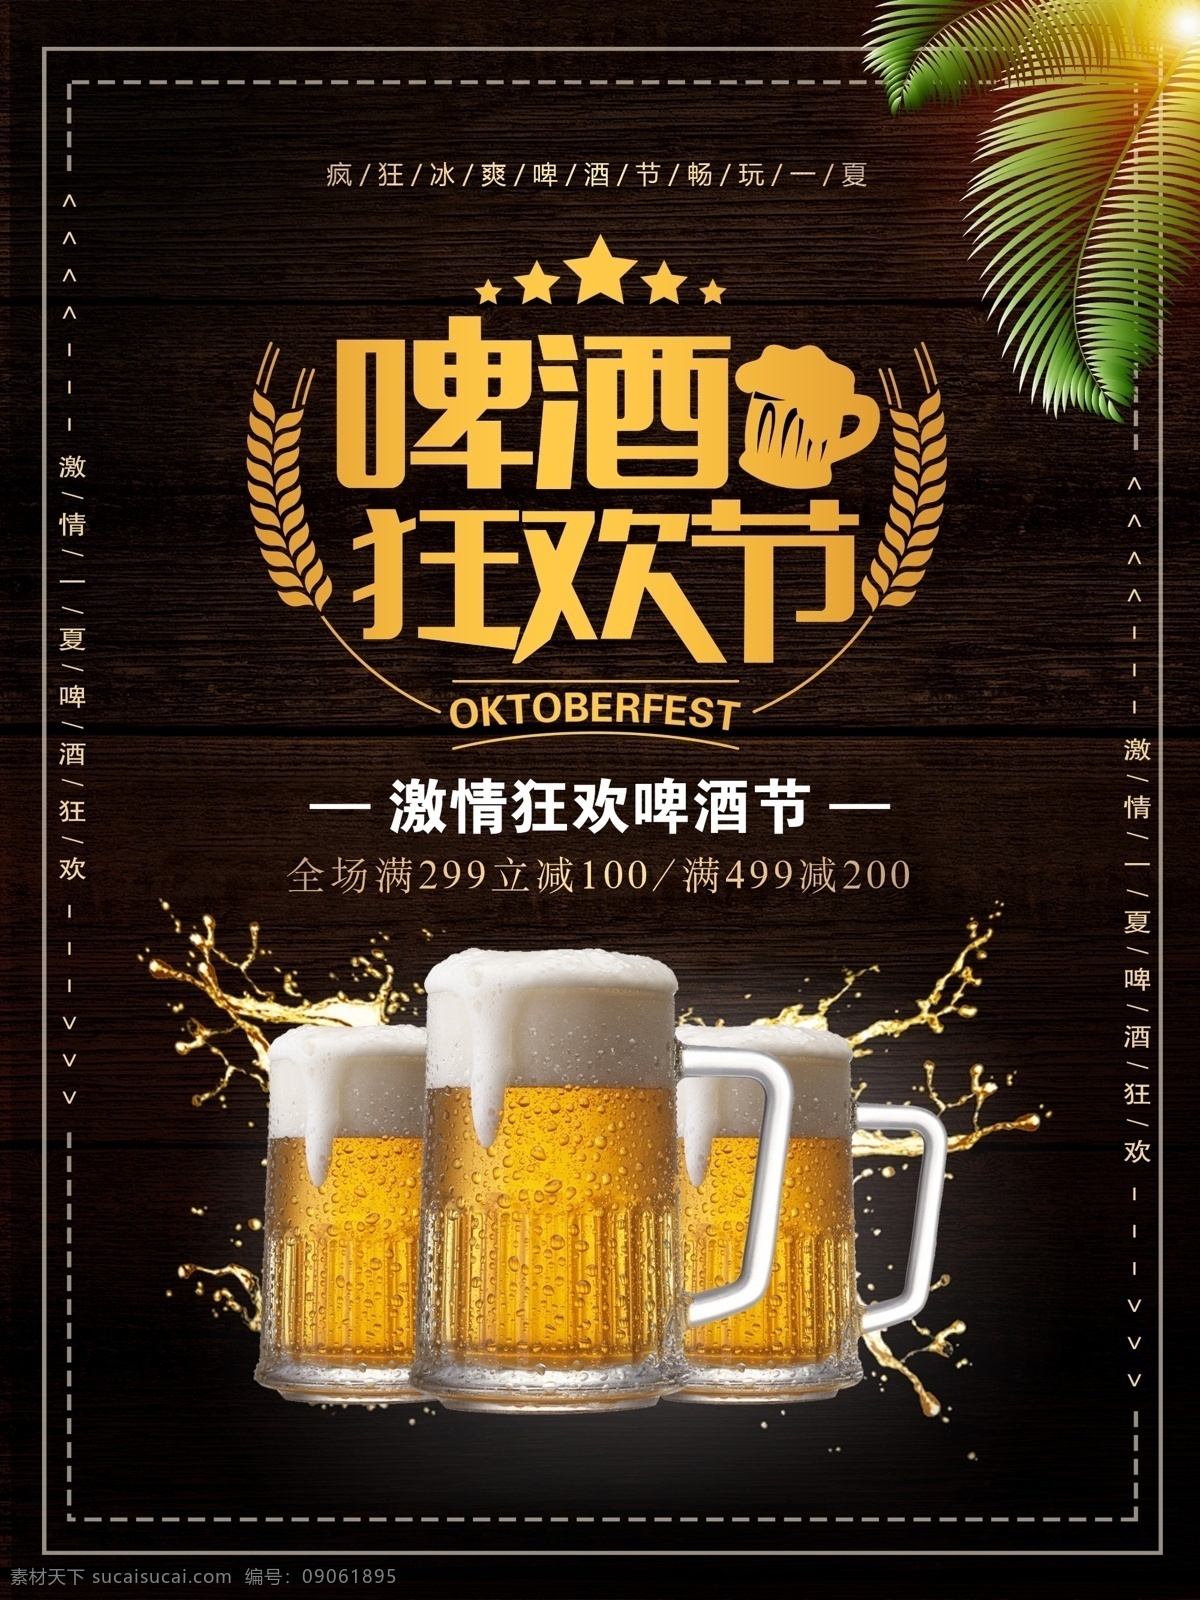 创意 简约 啤酒 狂欢节 促销 海报 啤酒节 夏日促销 简约海报 椰树 冰啤酒 啤酒狂欢节